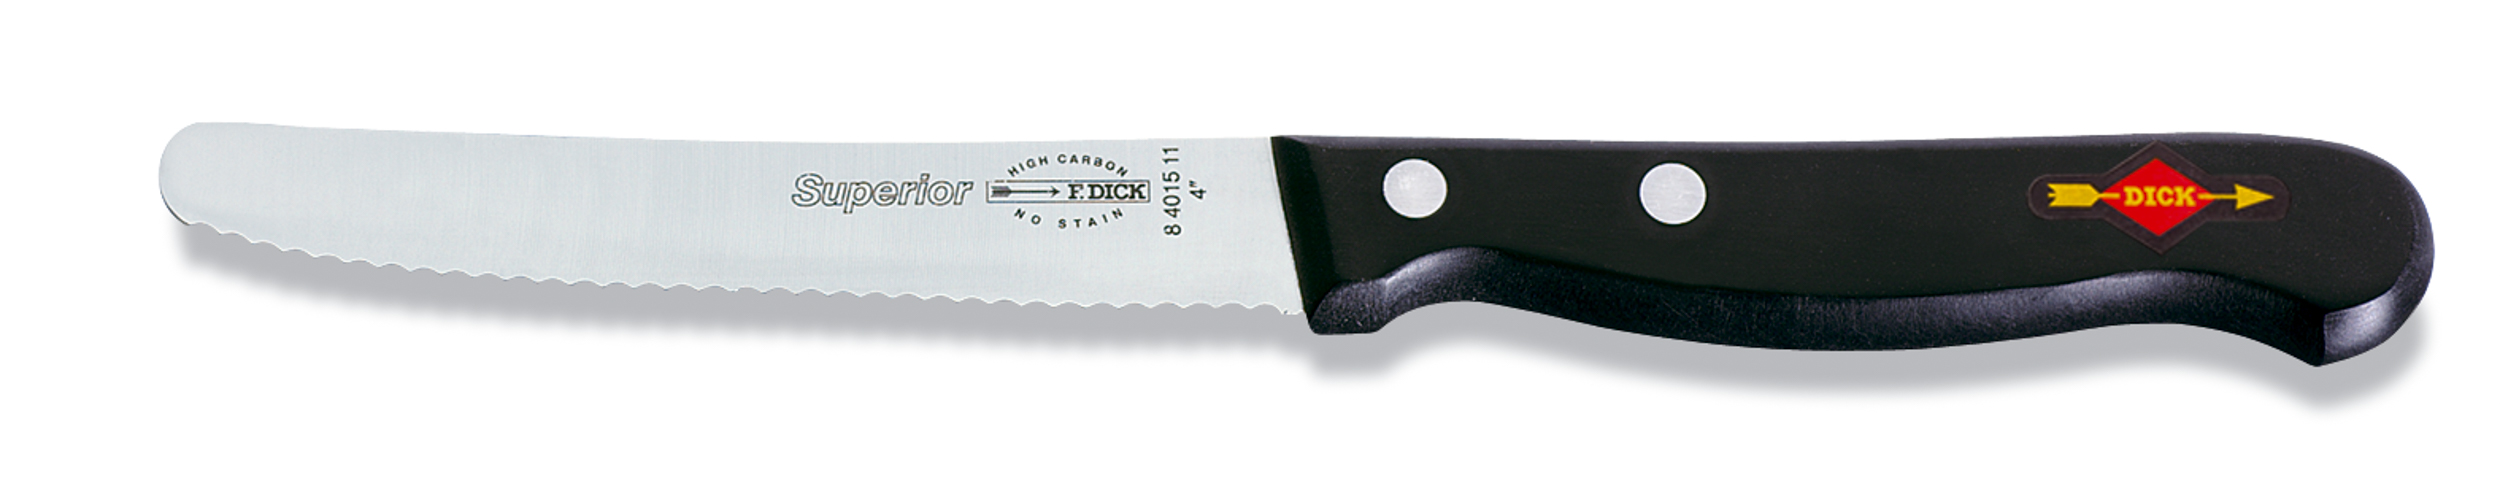 Dick Allzweckmesser 11 cm, poliert, Serie "Superior"